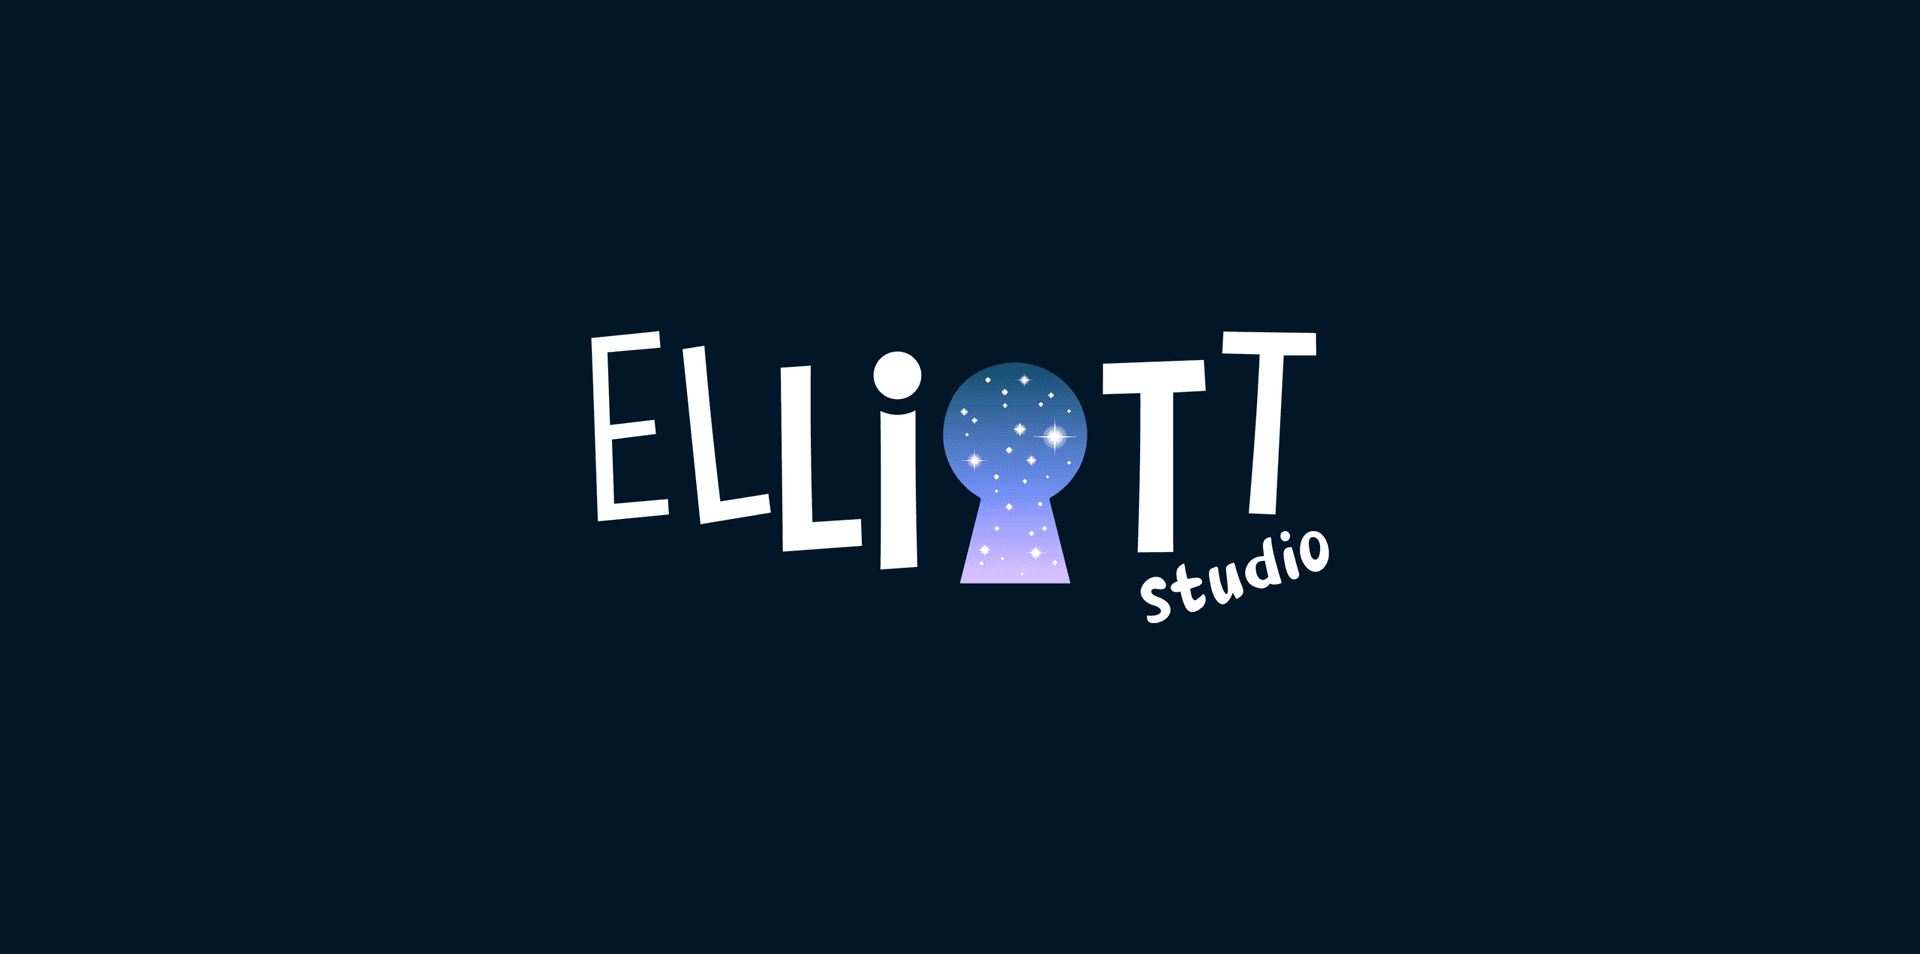 Elliott-banner-studio copie3.png